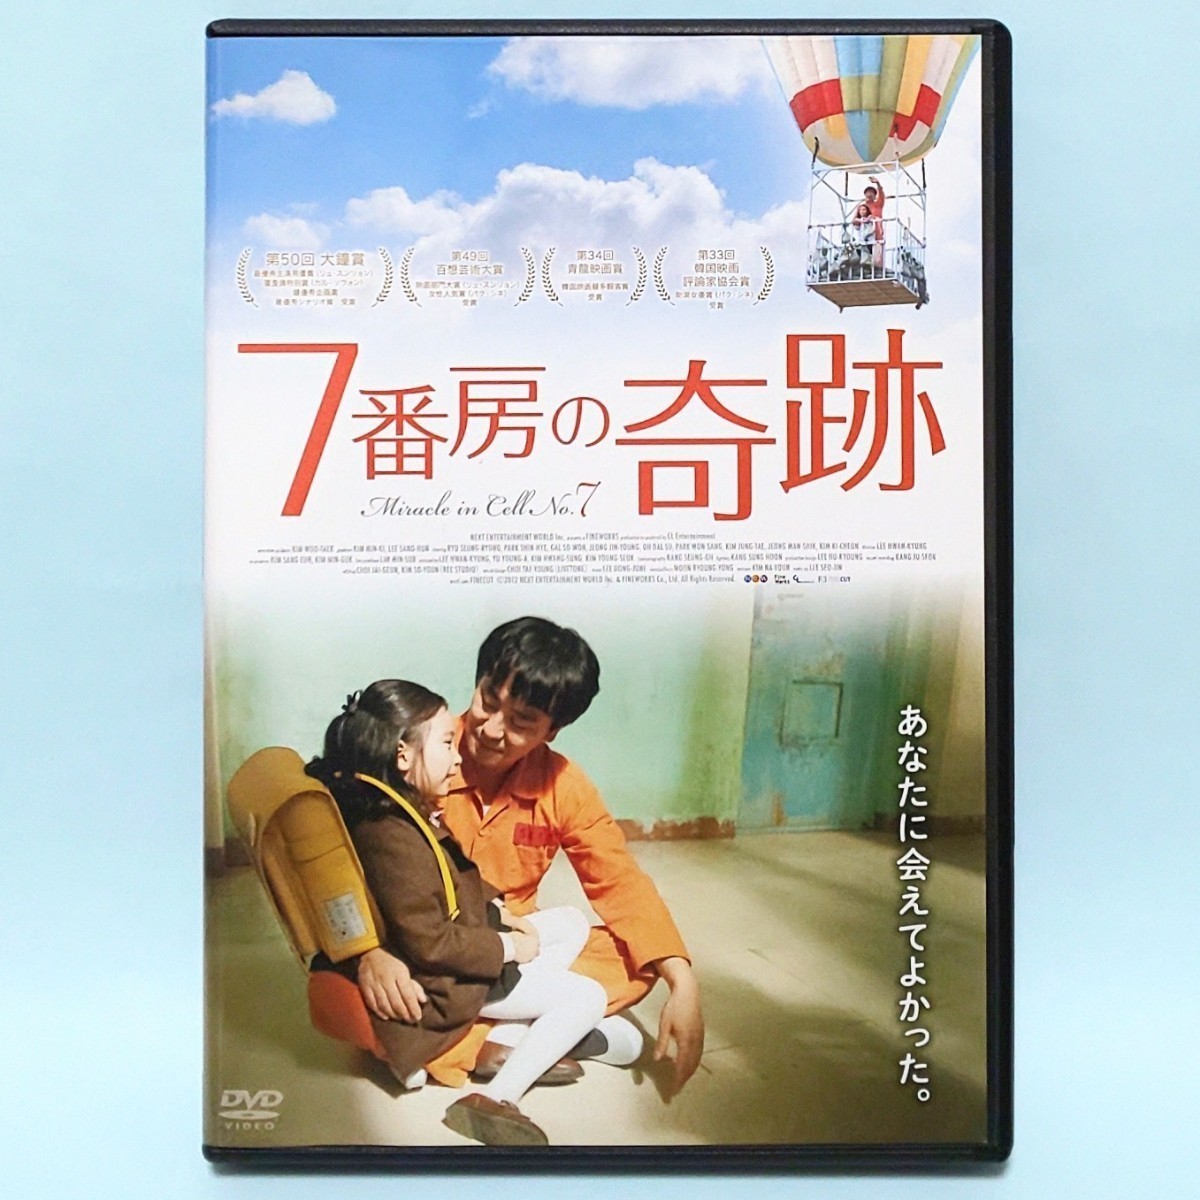 7番房の奇跡 レンタル版 DVD 韓国 リュ・スンリョン パク・シネ イ・ファンギョン